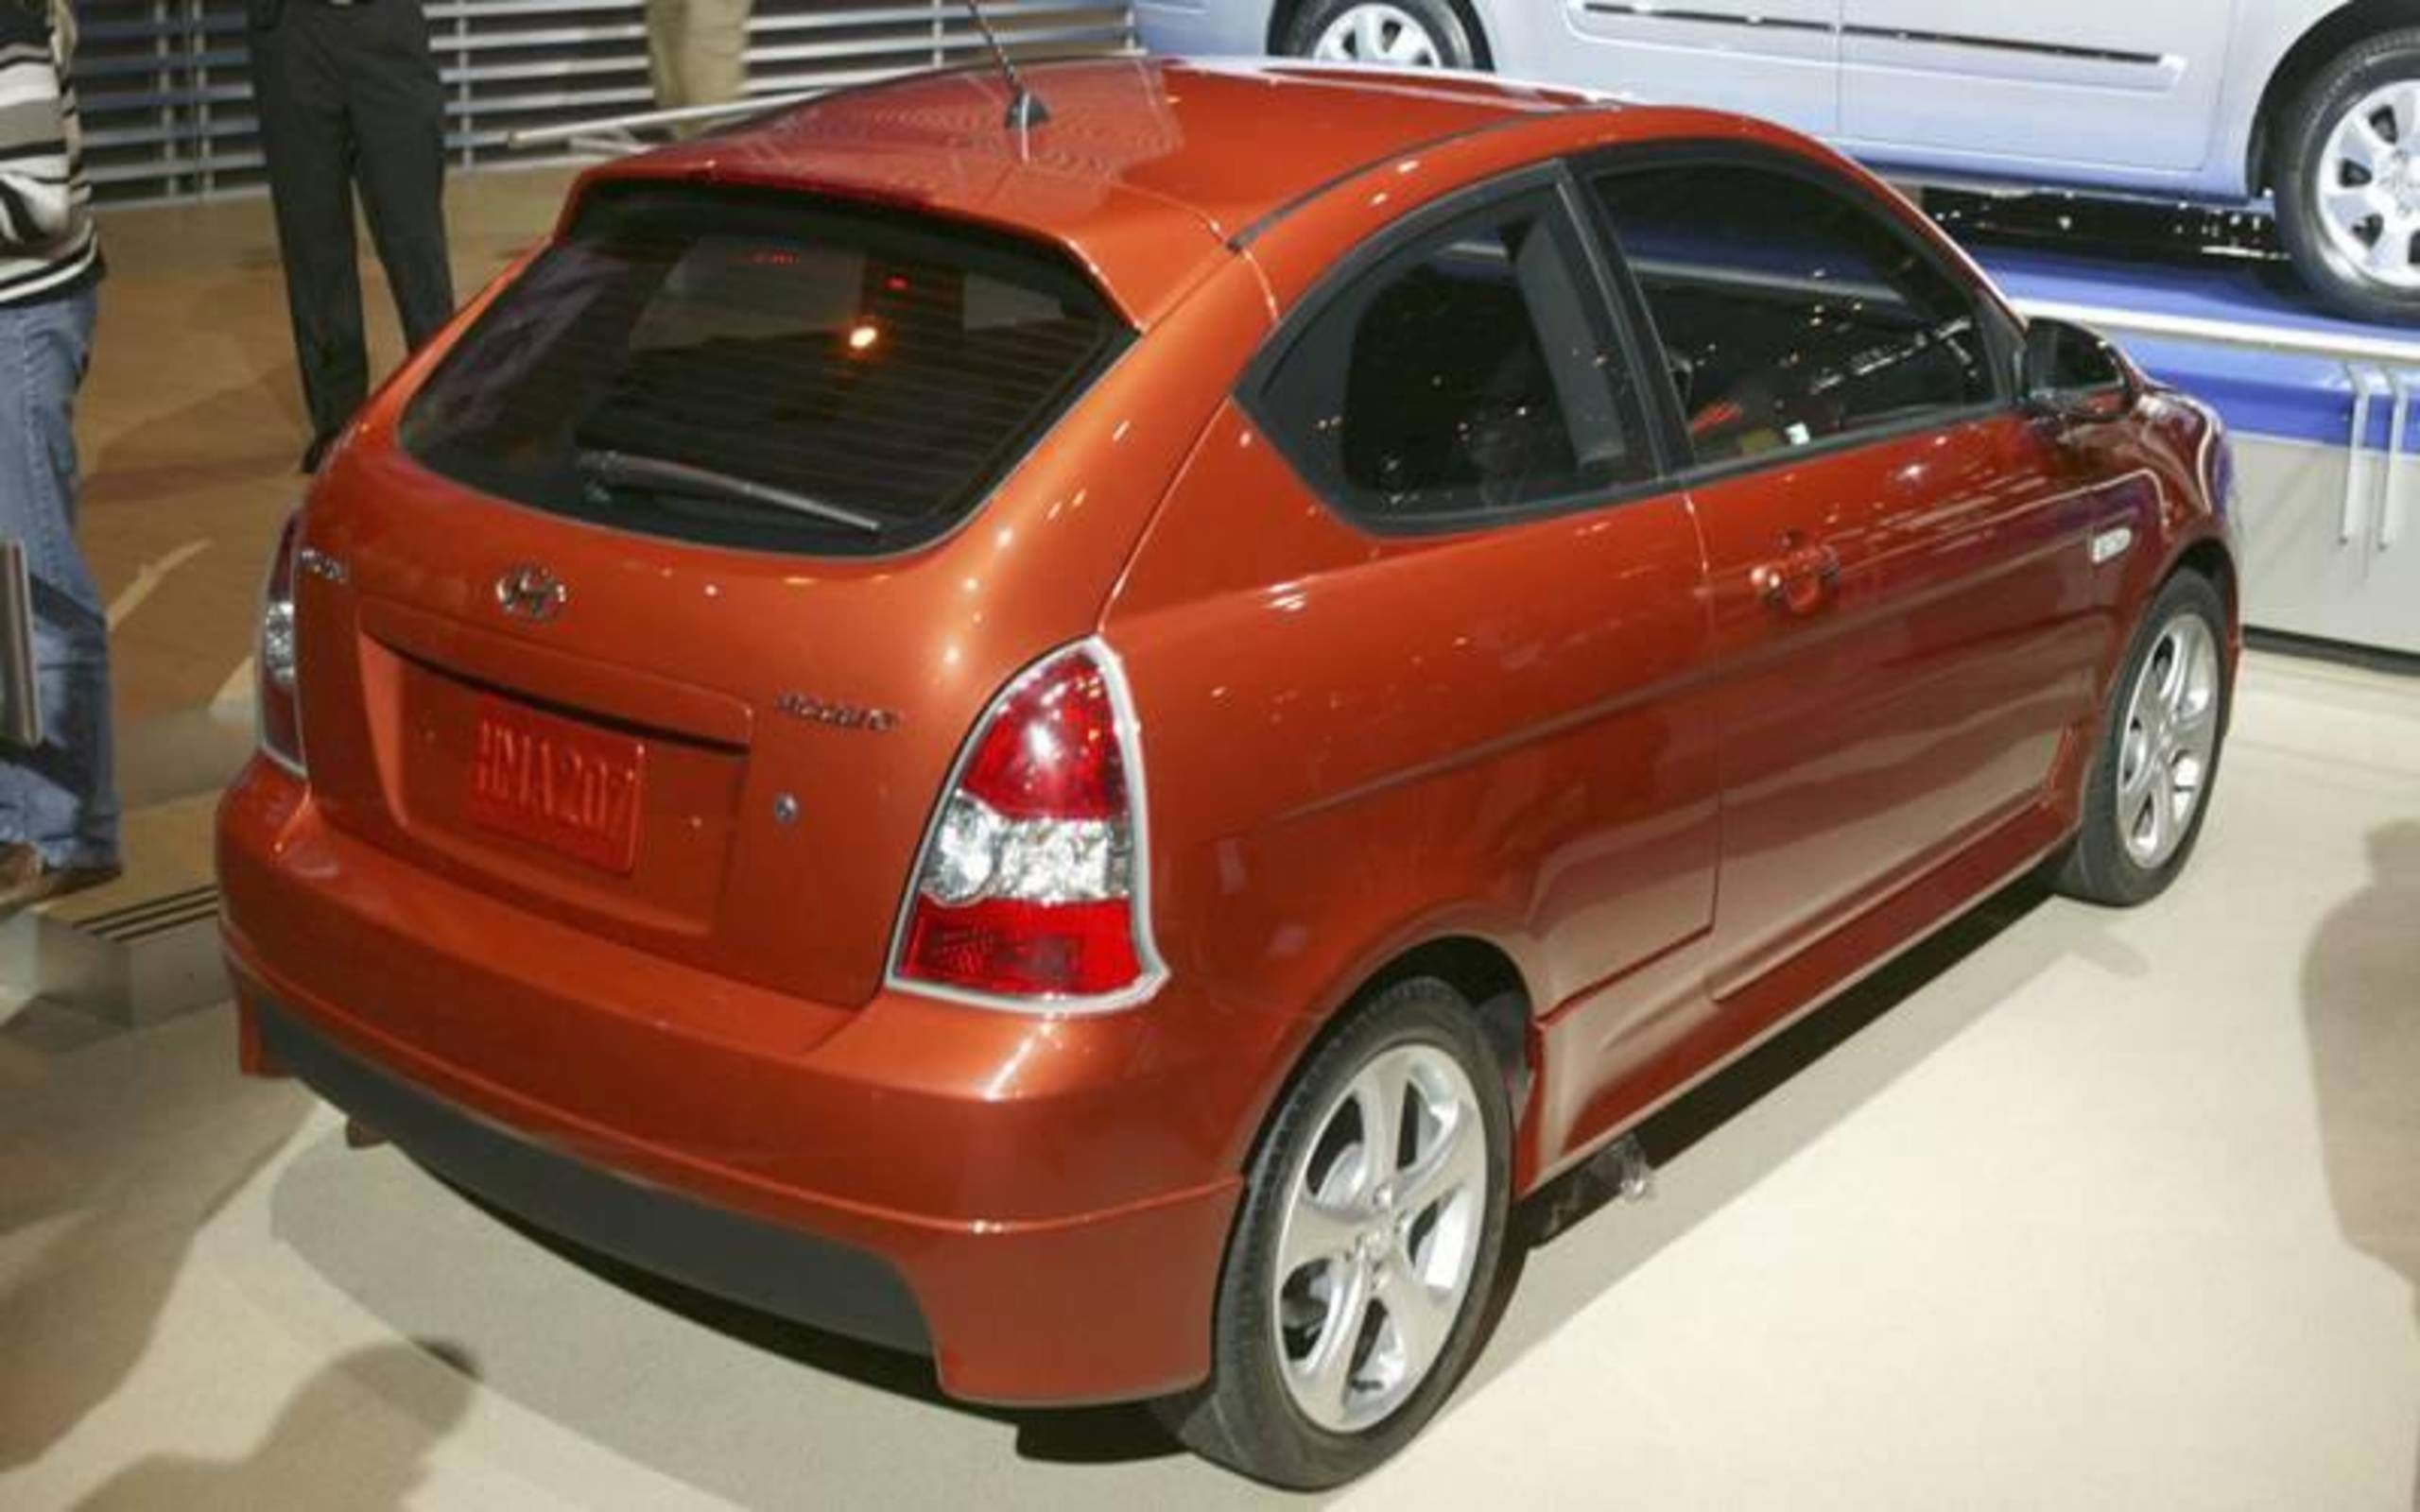 Mua Bán Xe Hyundai Accent Hatchback Cũ Và Mới Giá Rẻ Chính Chủ